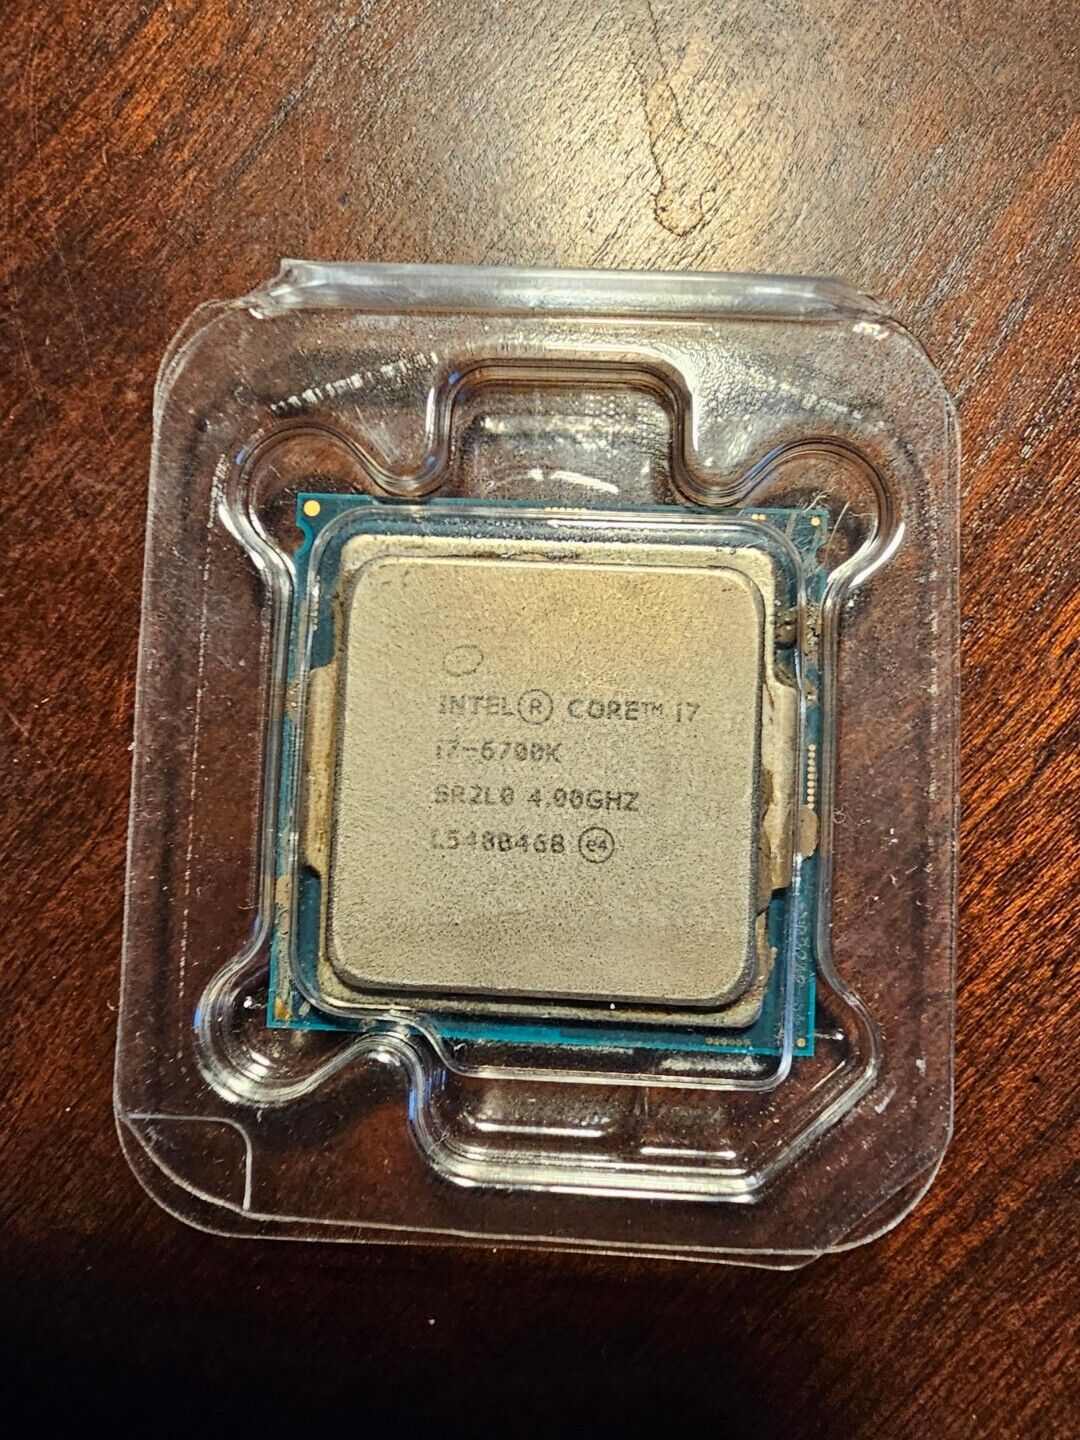 Intel Core i7-6700K SR2L0 4.0GHz Quad-Core FCLGA1151 Skylake CPU Processor